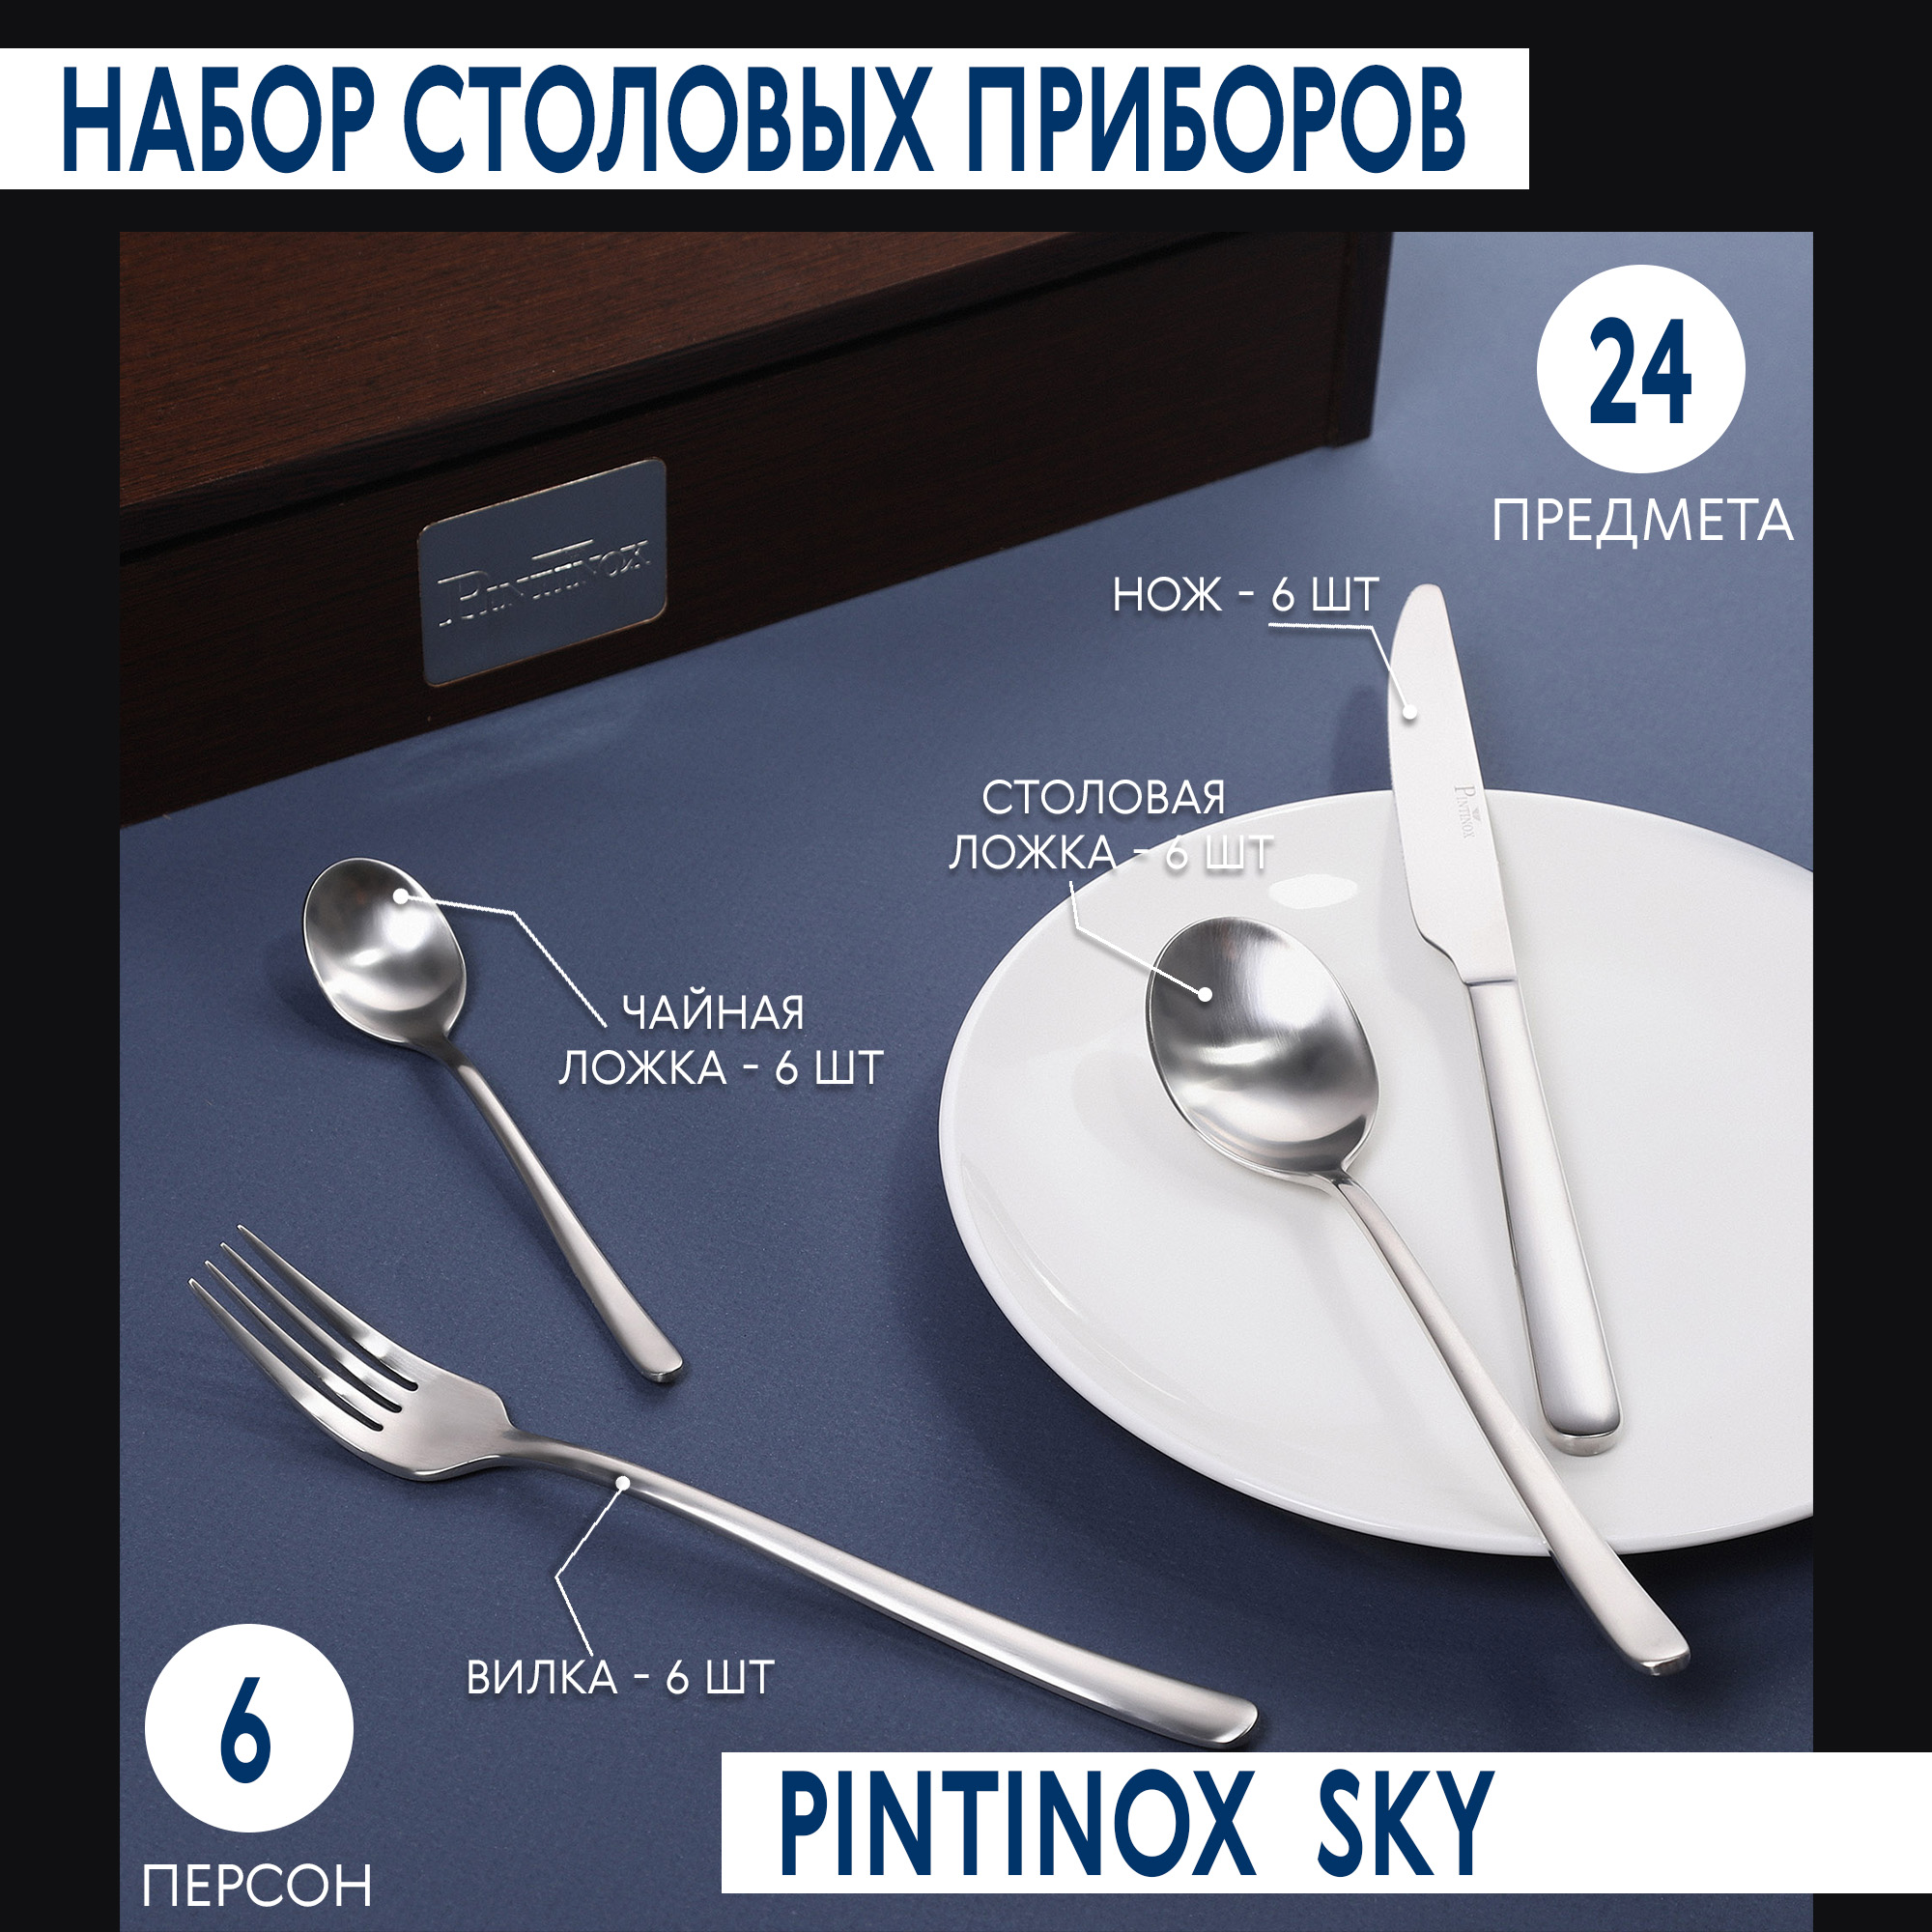 Набор столовых приборов Pintinox Sky 24 предмета 6 персон, цвет стальной - фото 2